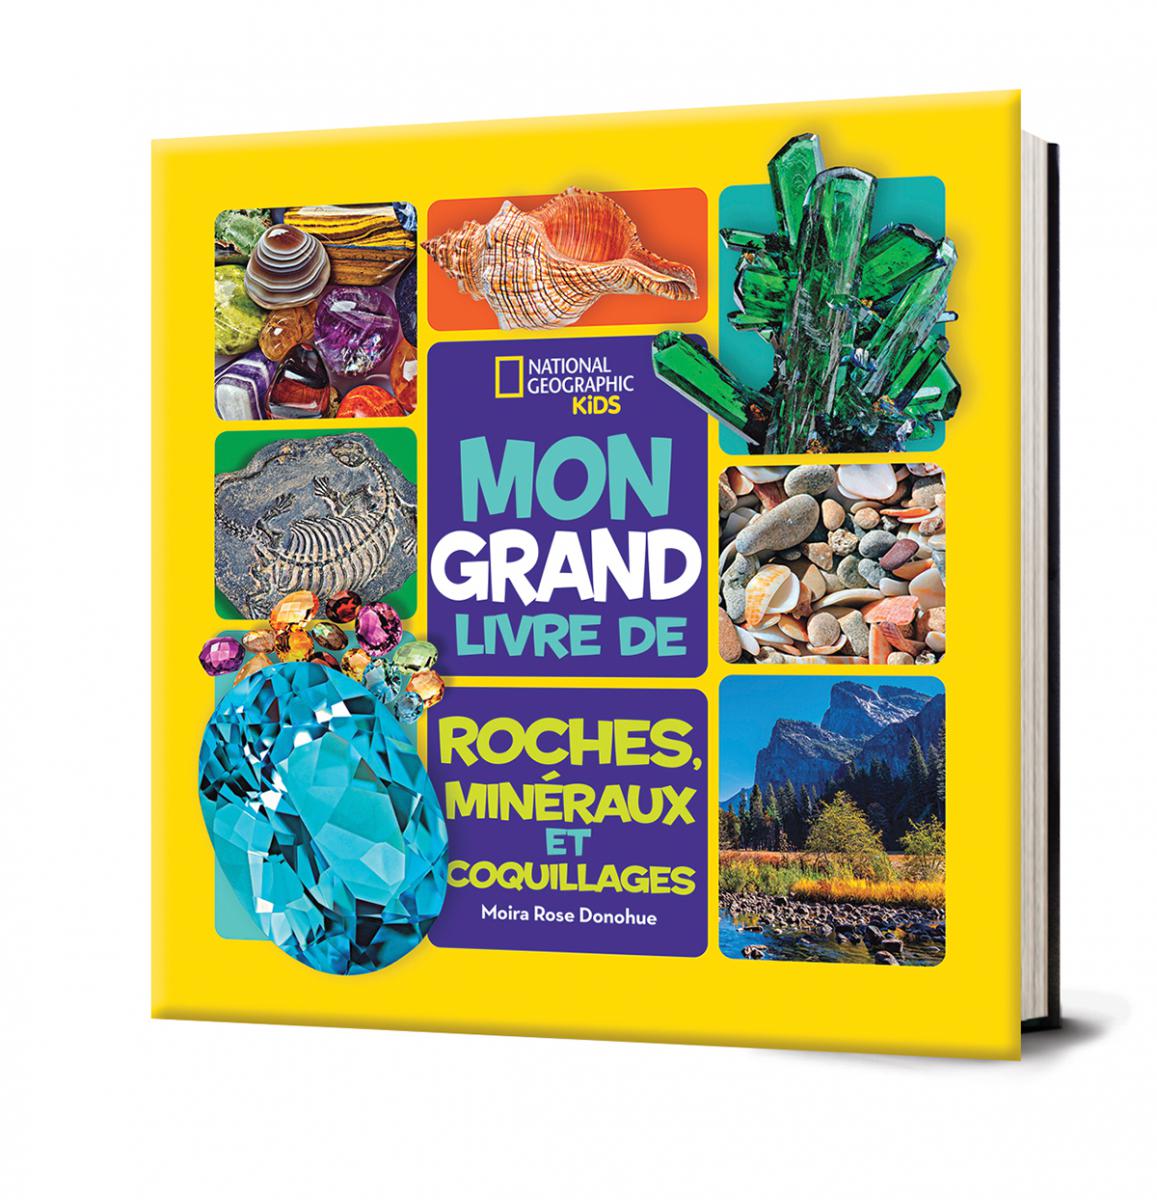  National Geographic Kids : Mon grand livre de roches, minéraux et coquillages 